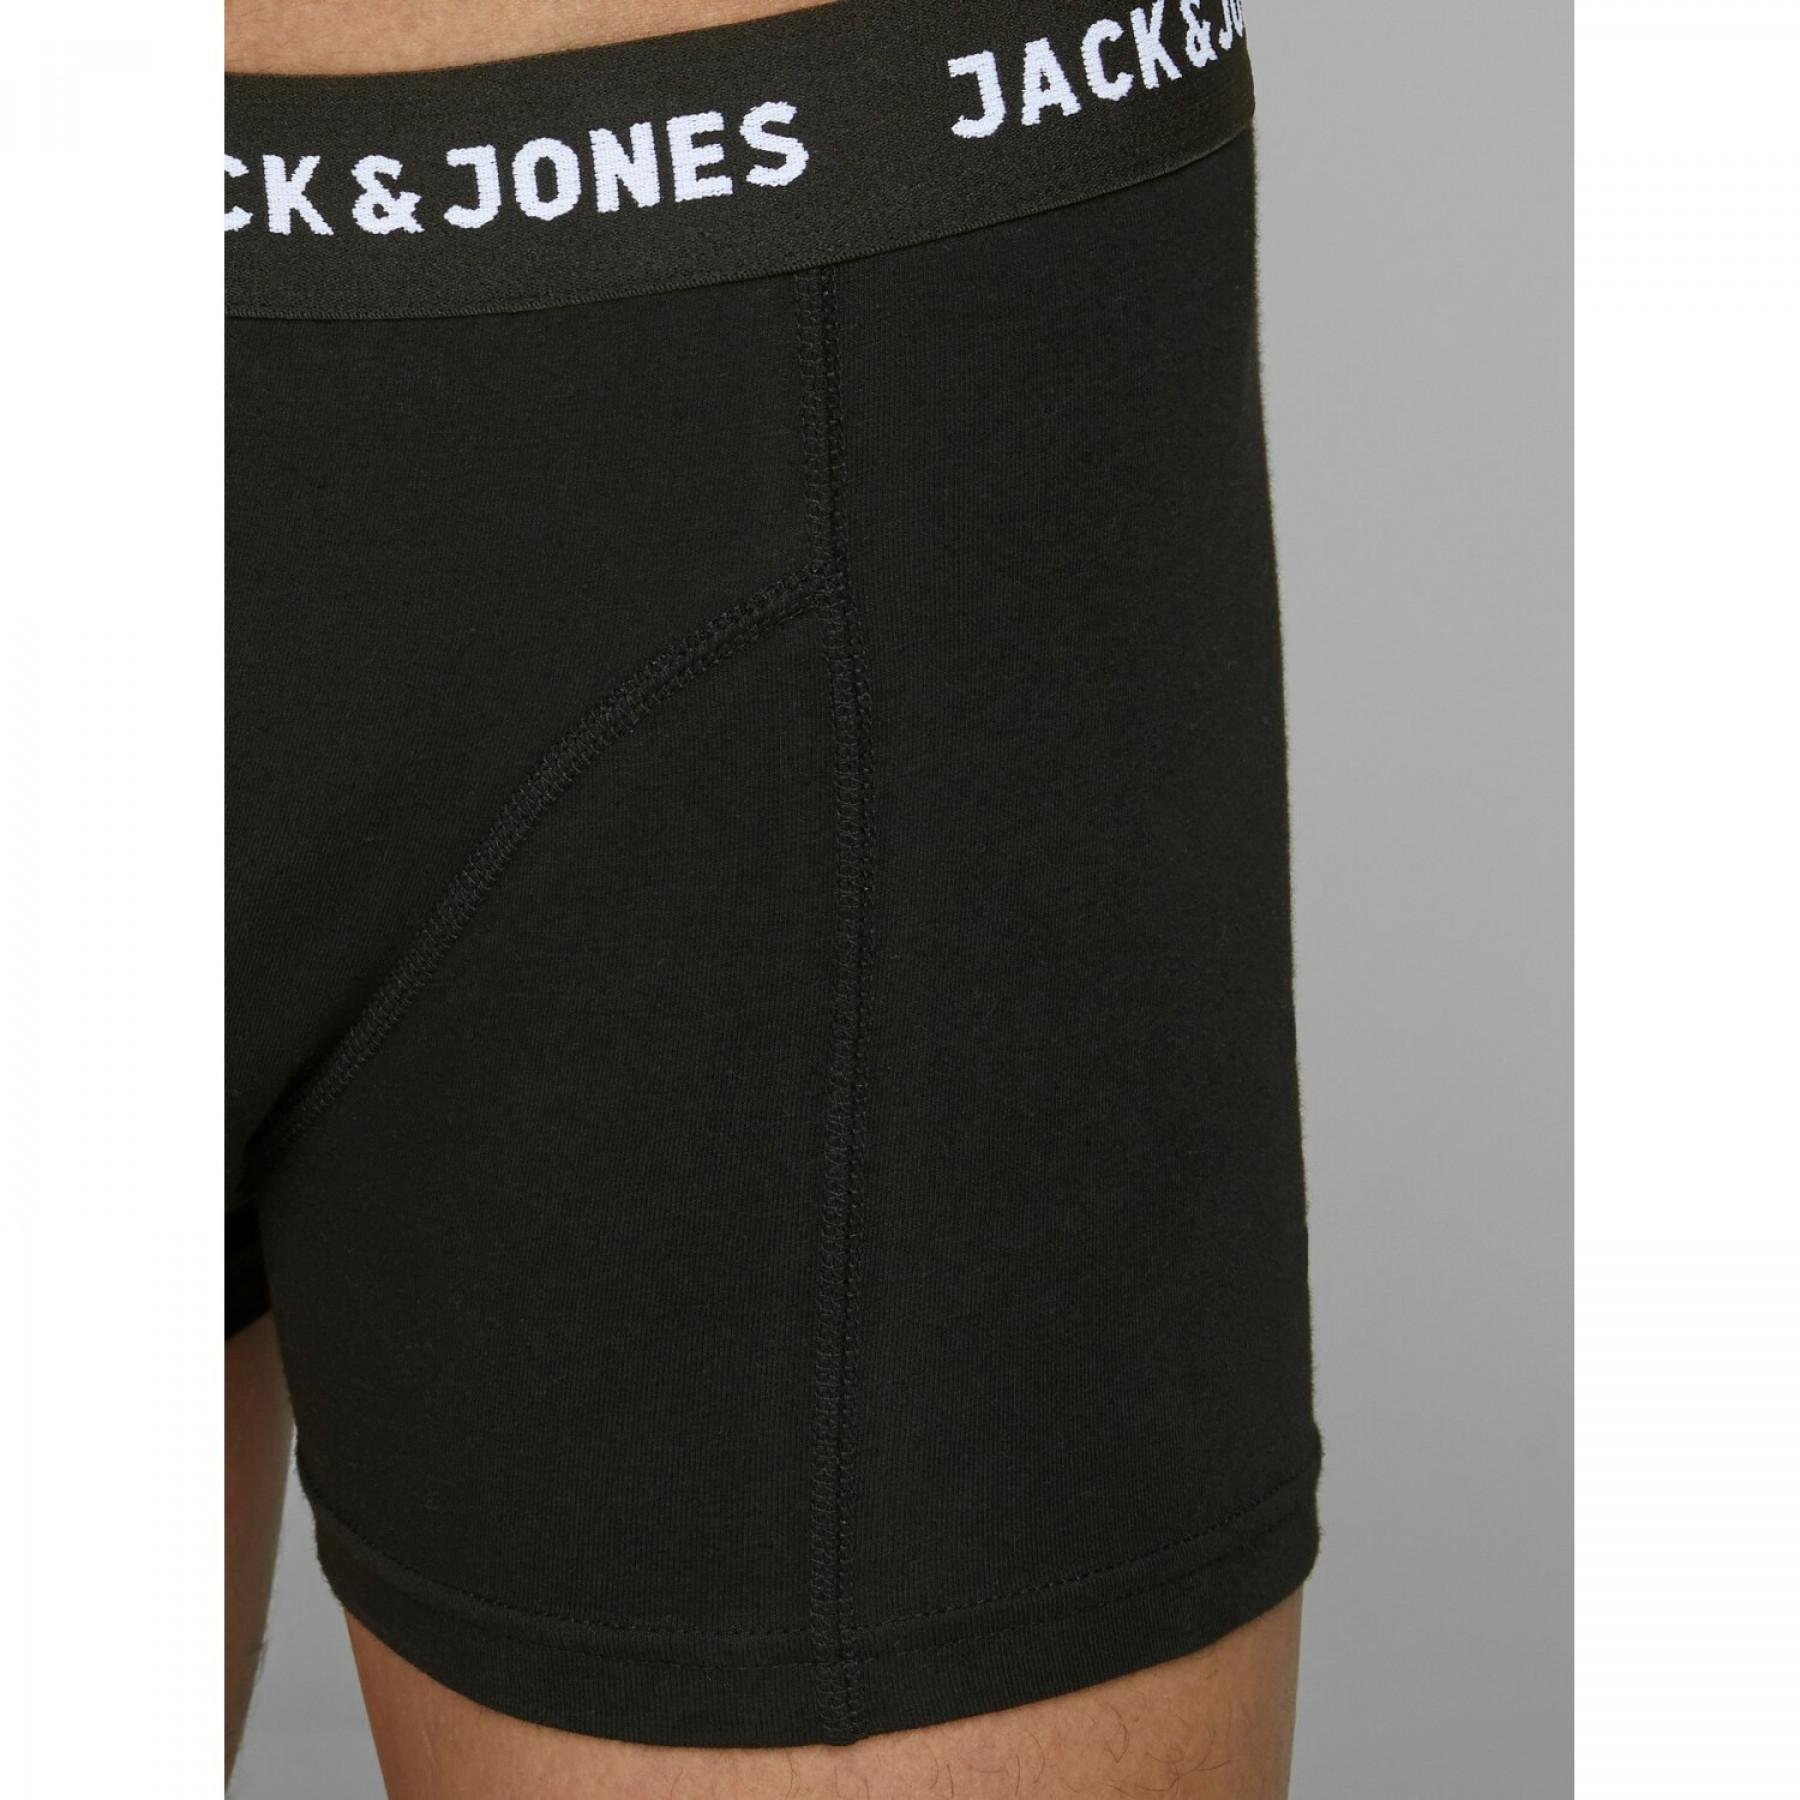 Set van 3 boxershorts Jack & Jones jacanthony